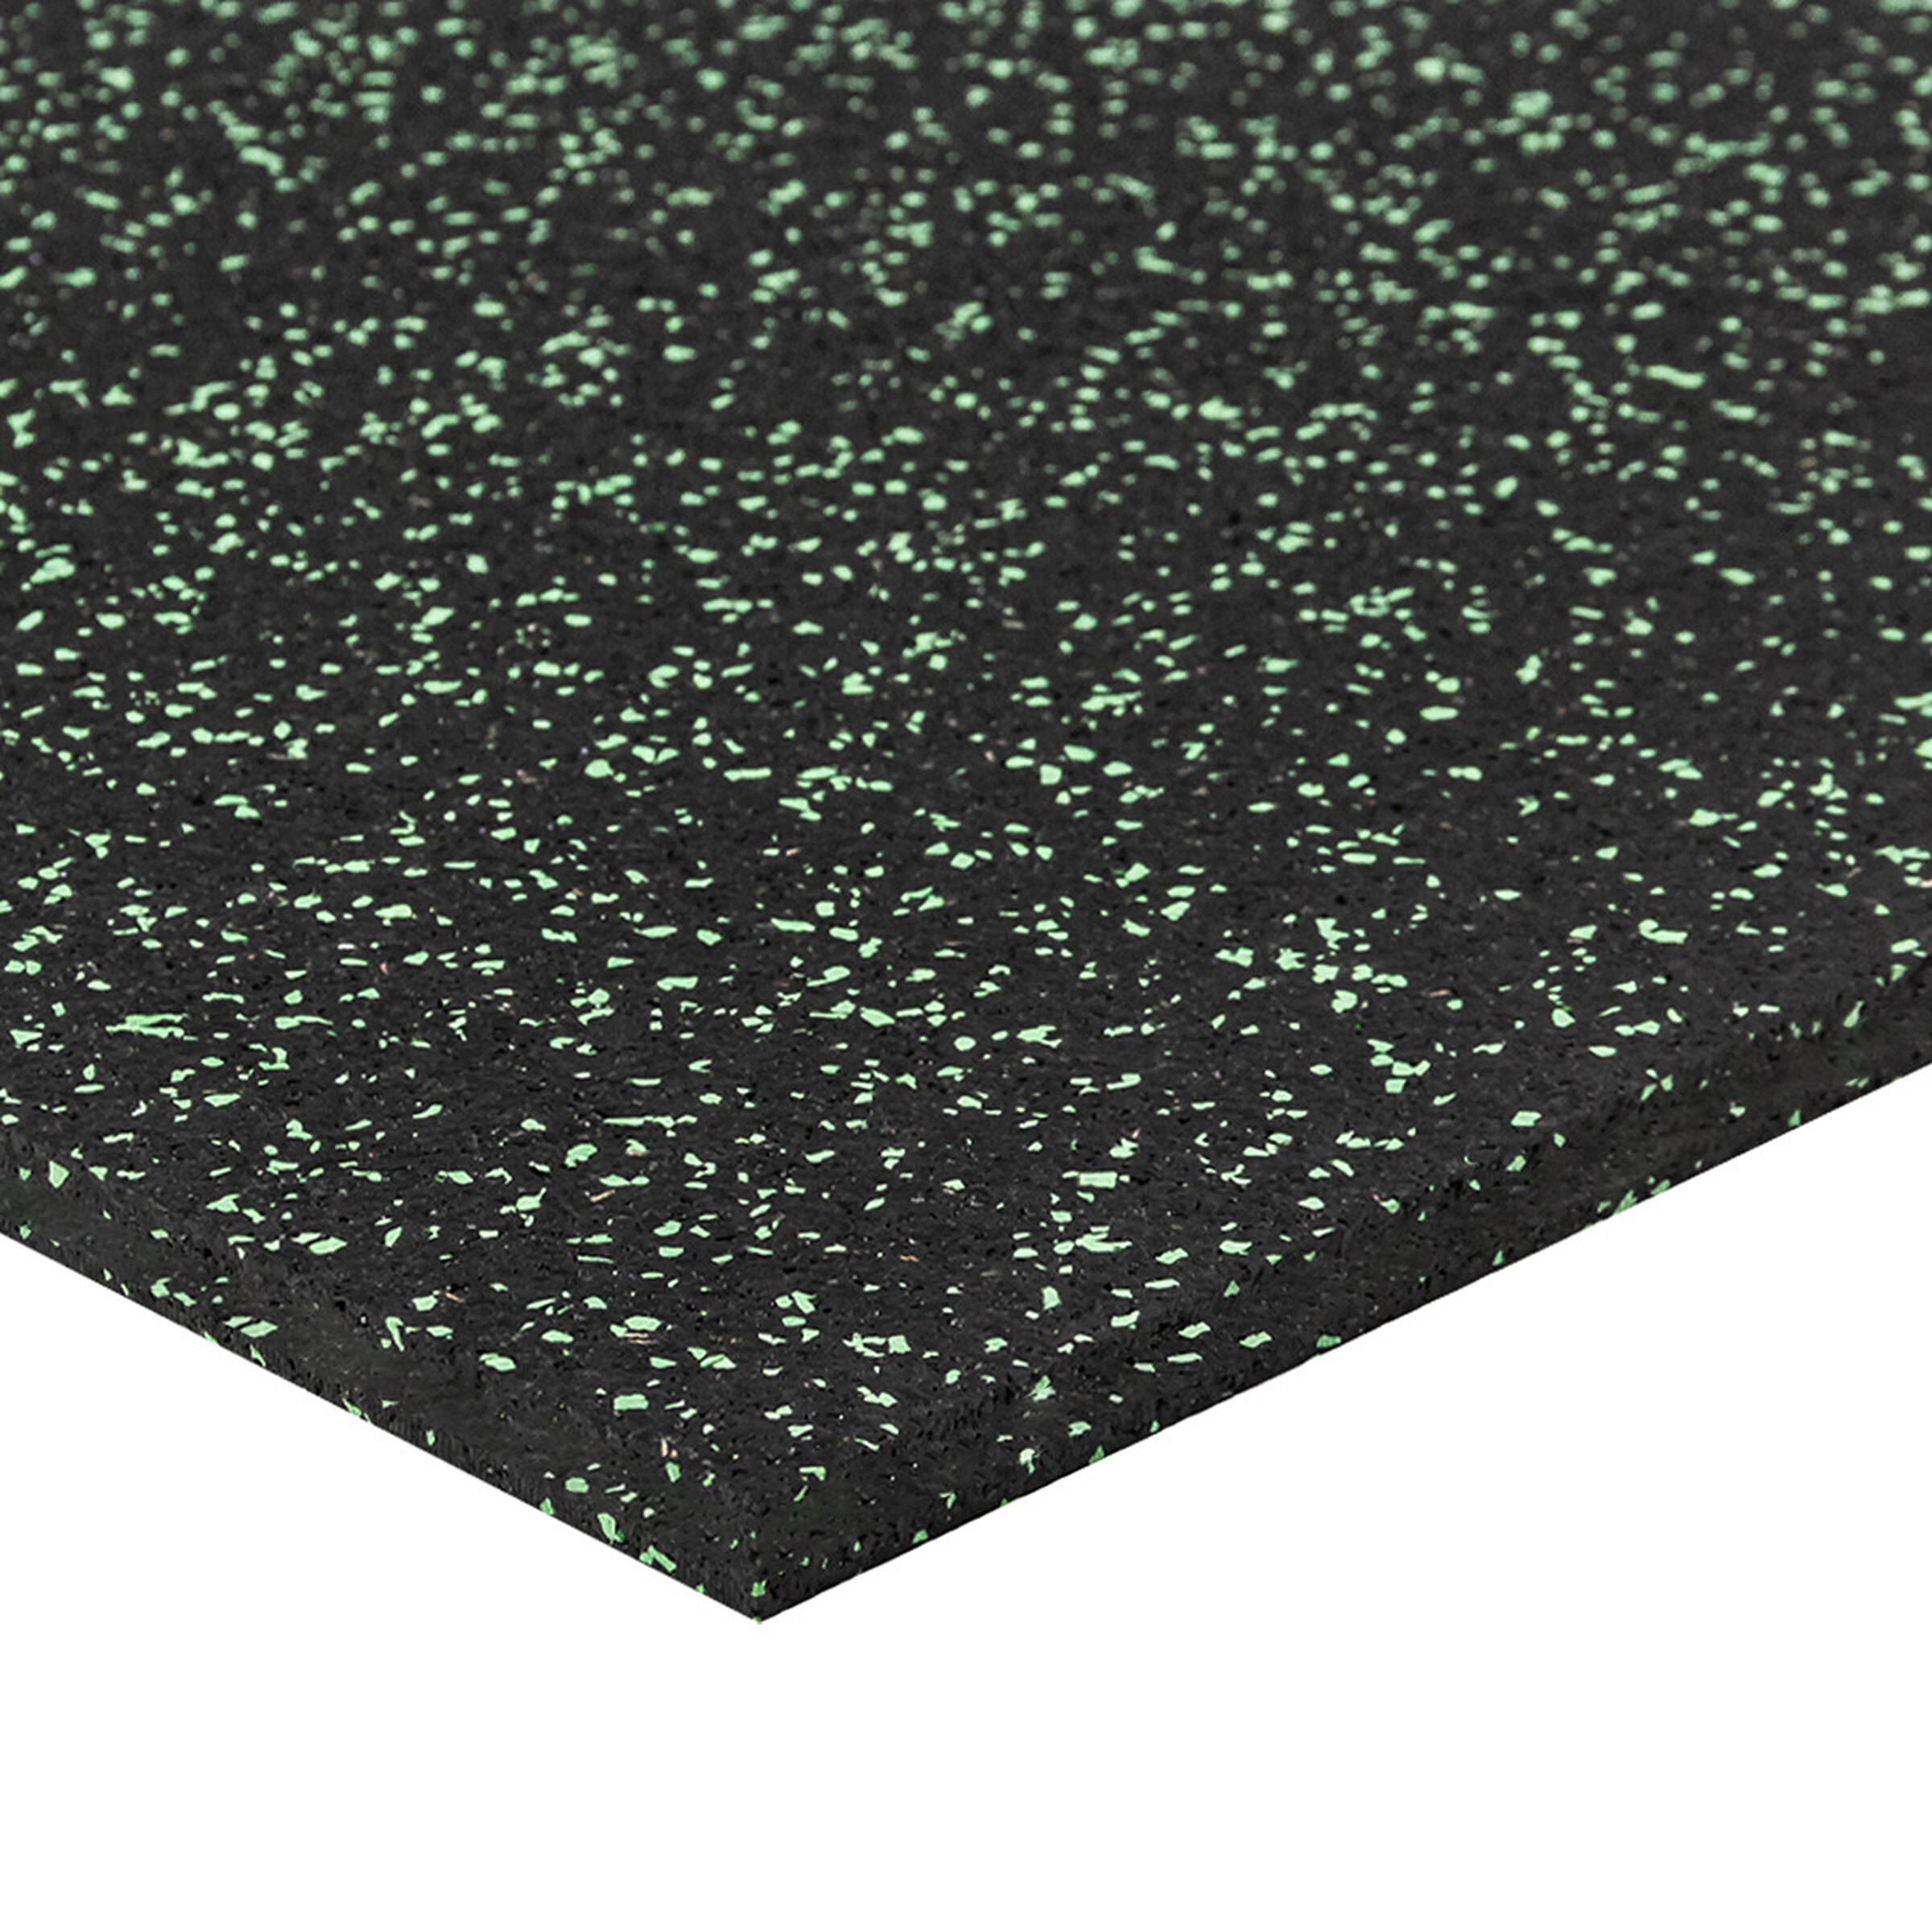 Čierno-zelená gumová modulová puzzle dlažba (okraj) FLOMA FitFlo SF1050 - dĺžka 50 cm, šírka 50 cm, výška 1,6 cm